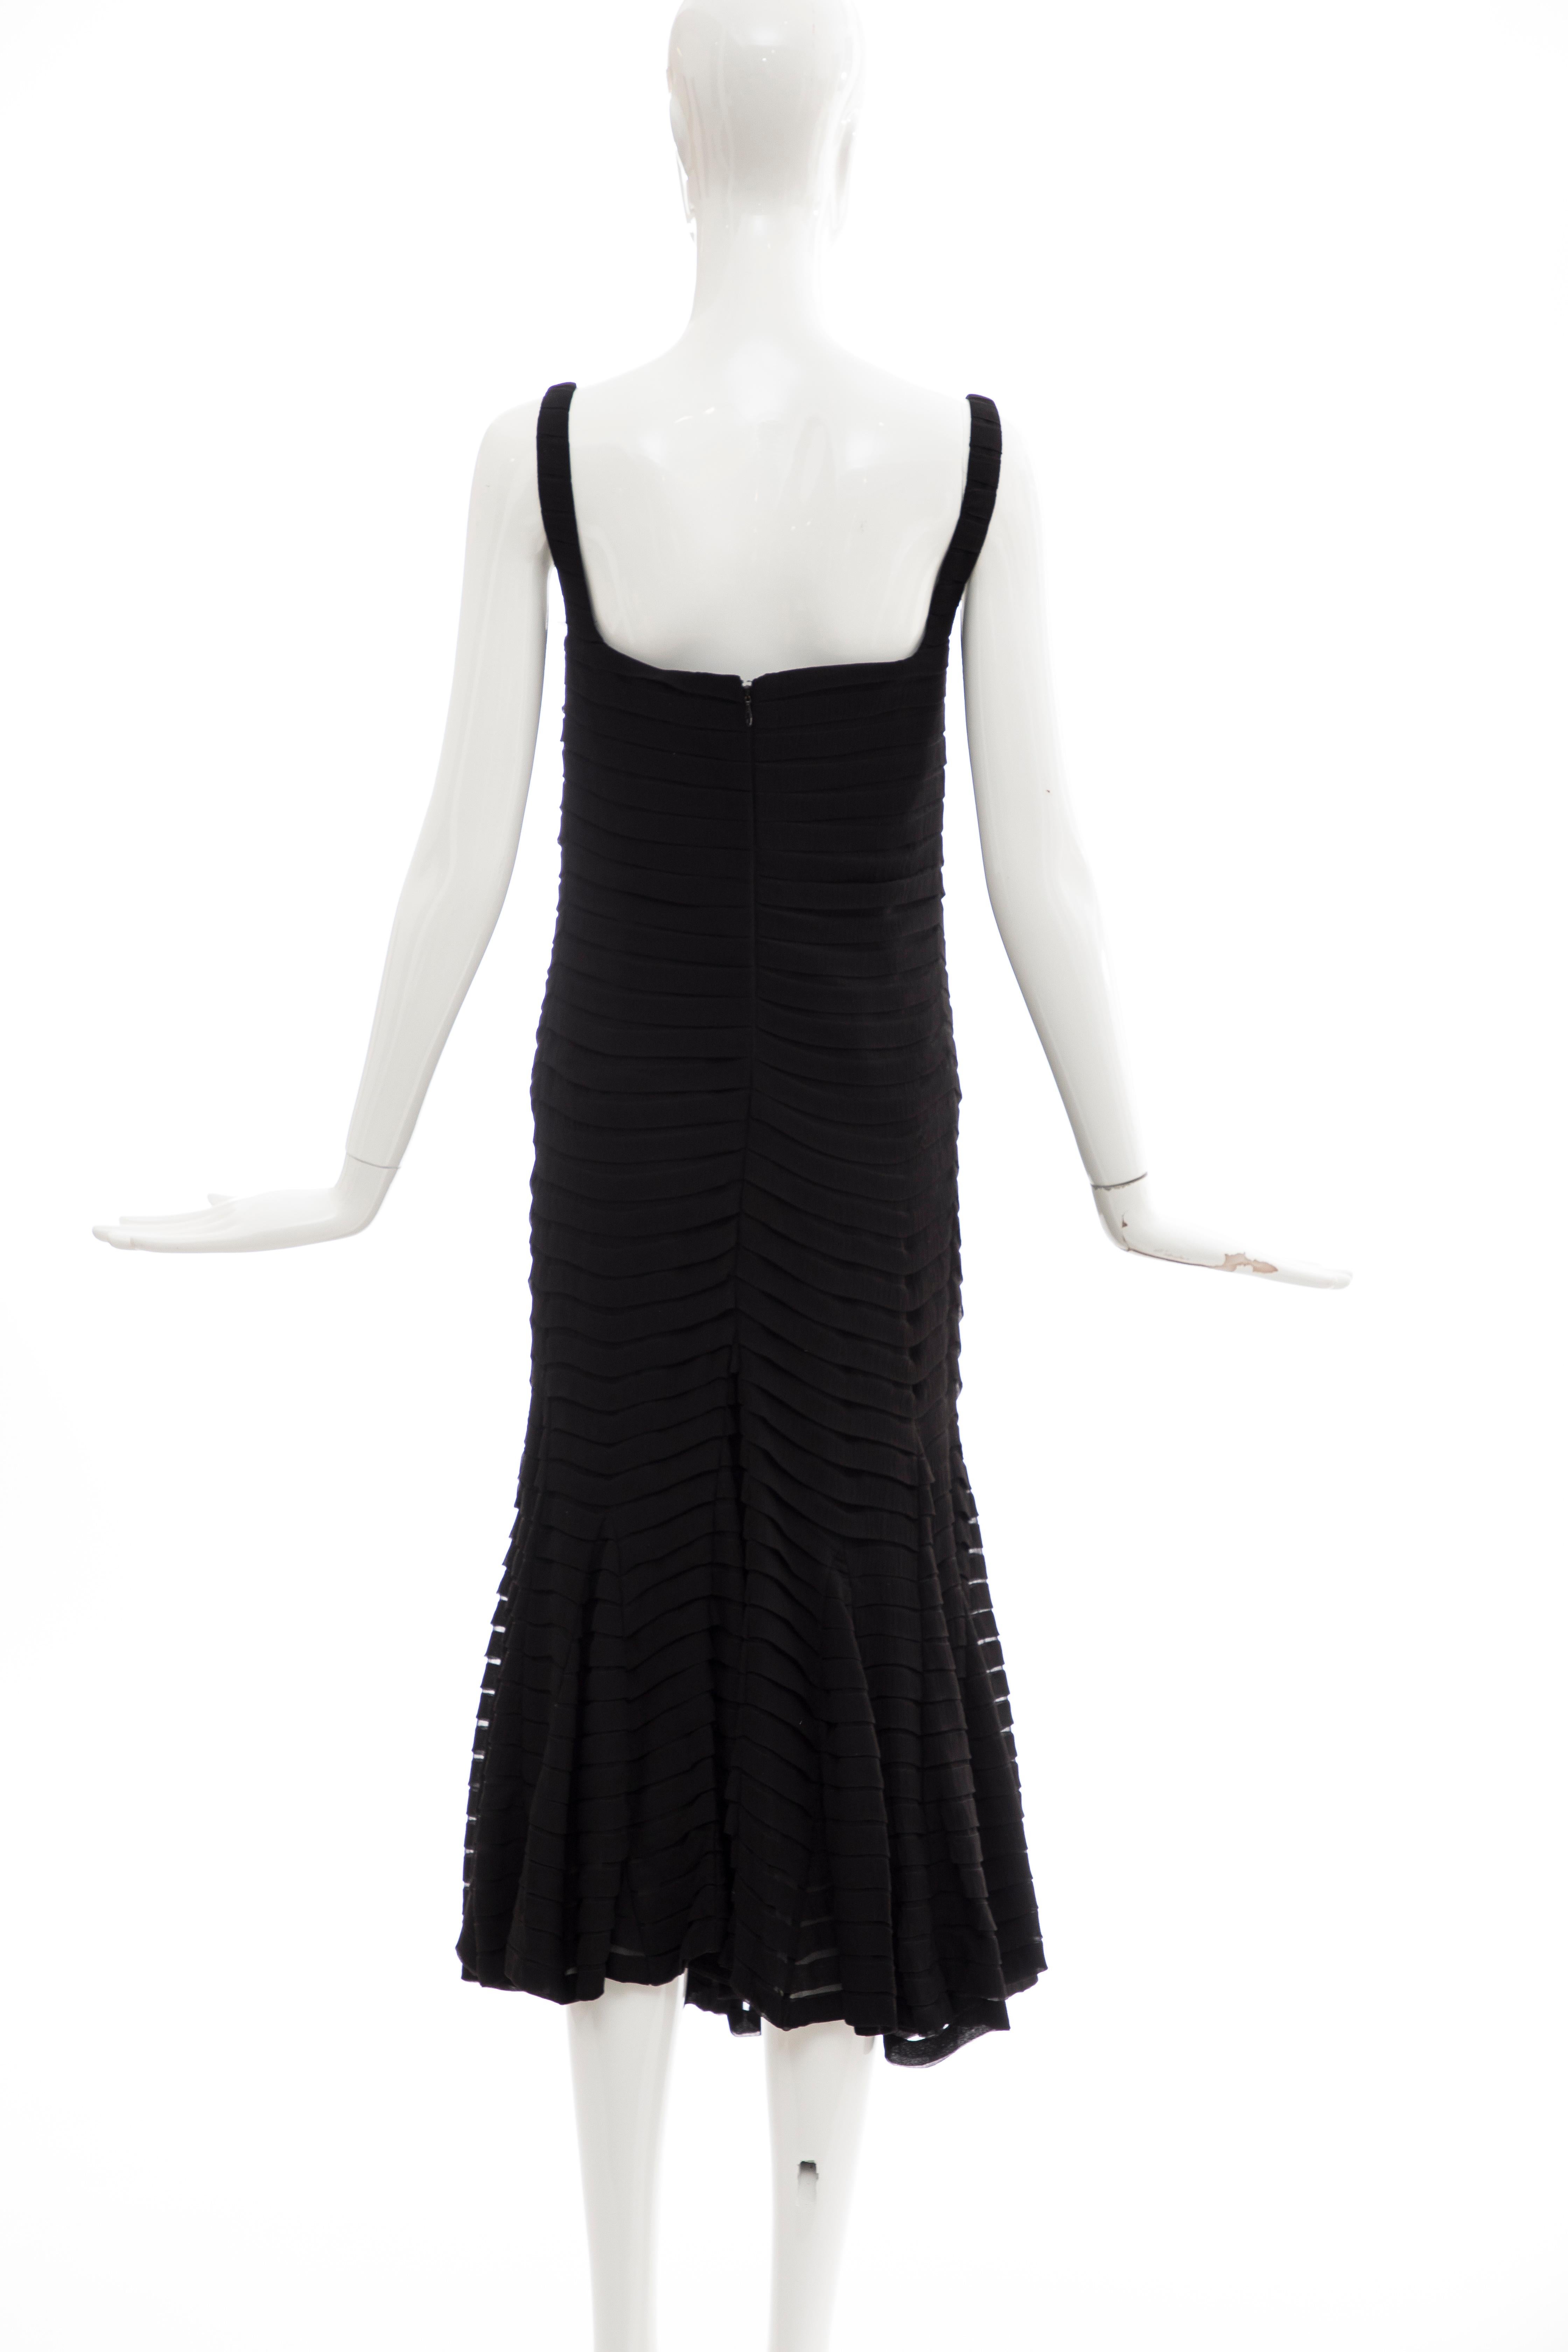 Alexander McQueen Black Silk Chiffon Evening Dress, Fall 2005  For Sale 3